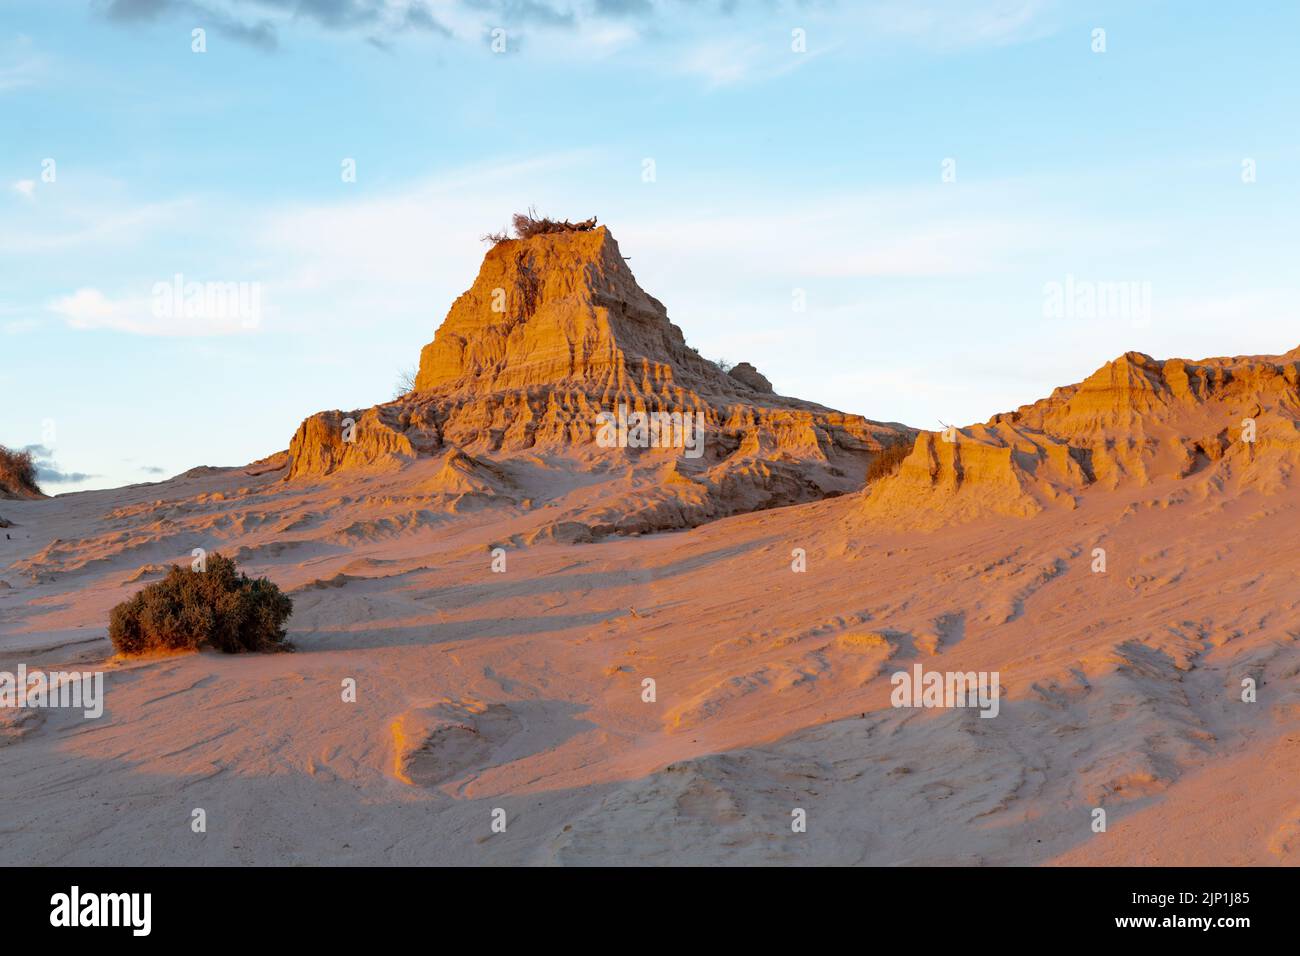 Les monuments sablonneux s'élèvent dans le désert australien Banque D'Images